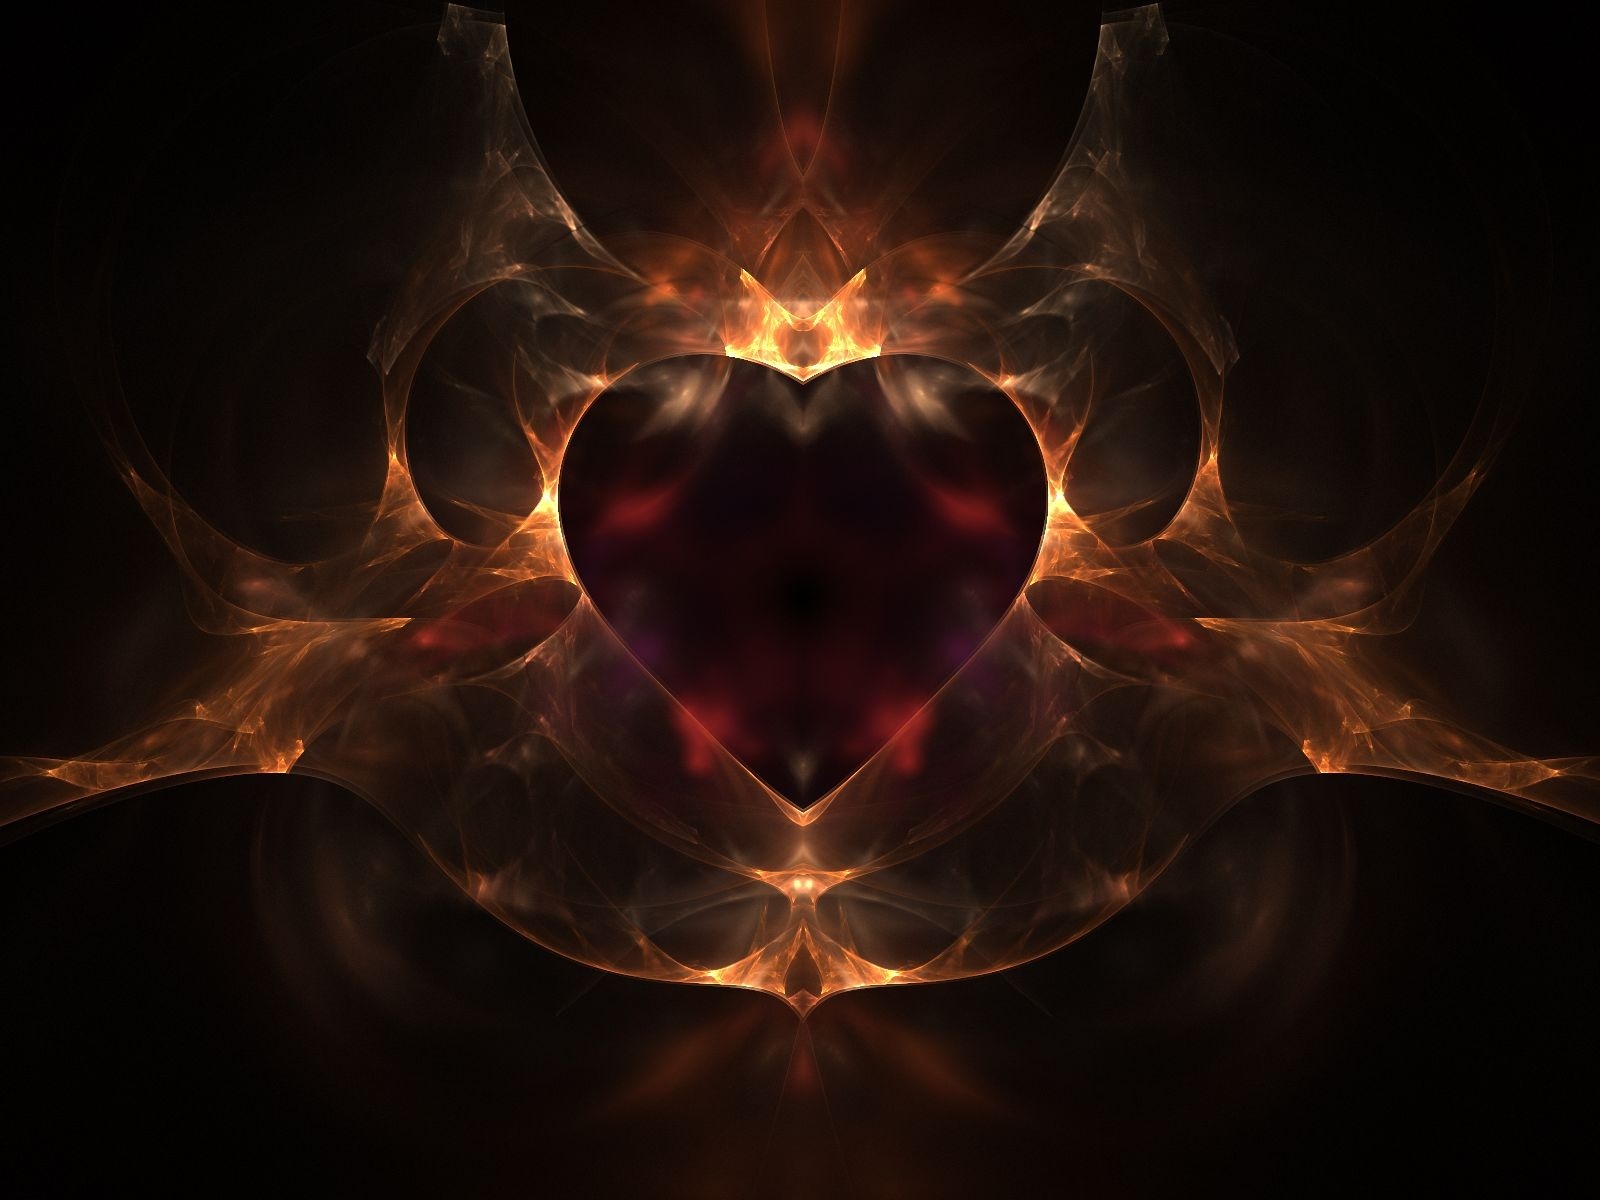 Tải hình nền trái tim 3D tình yêu đẹp ấn tượng nhất hiện nay